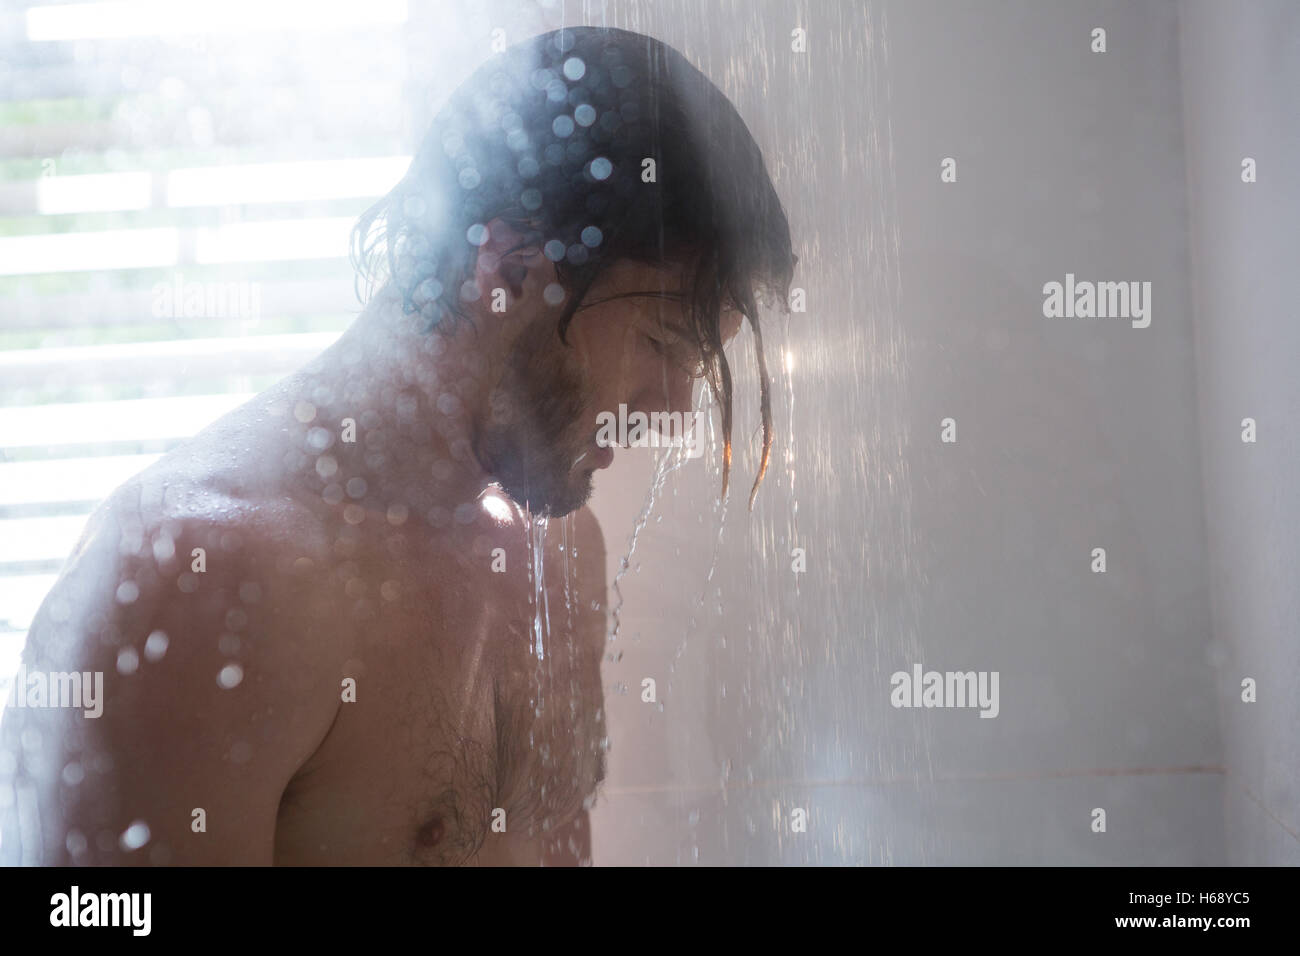 Uomo in doccia immagini e fotografie stock ad alta risoluzione - Alamy